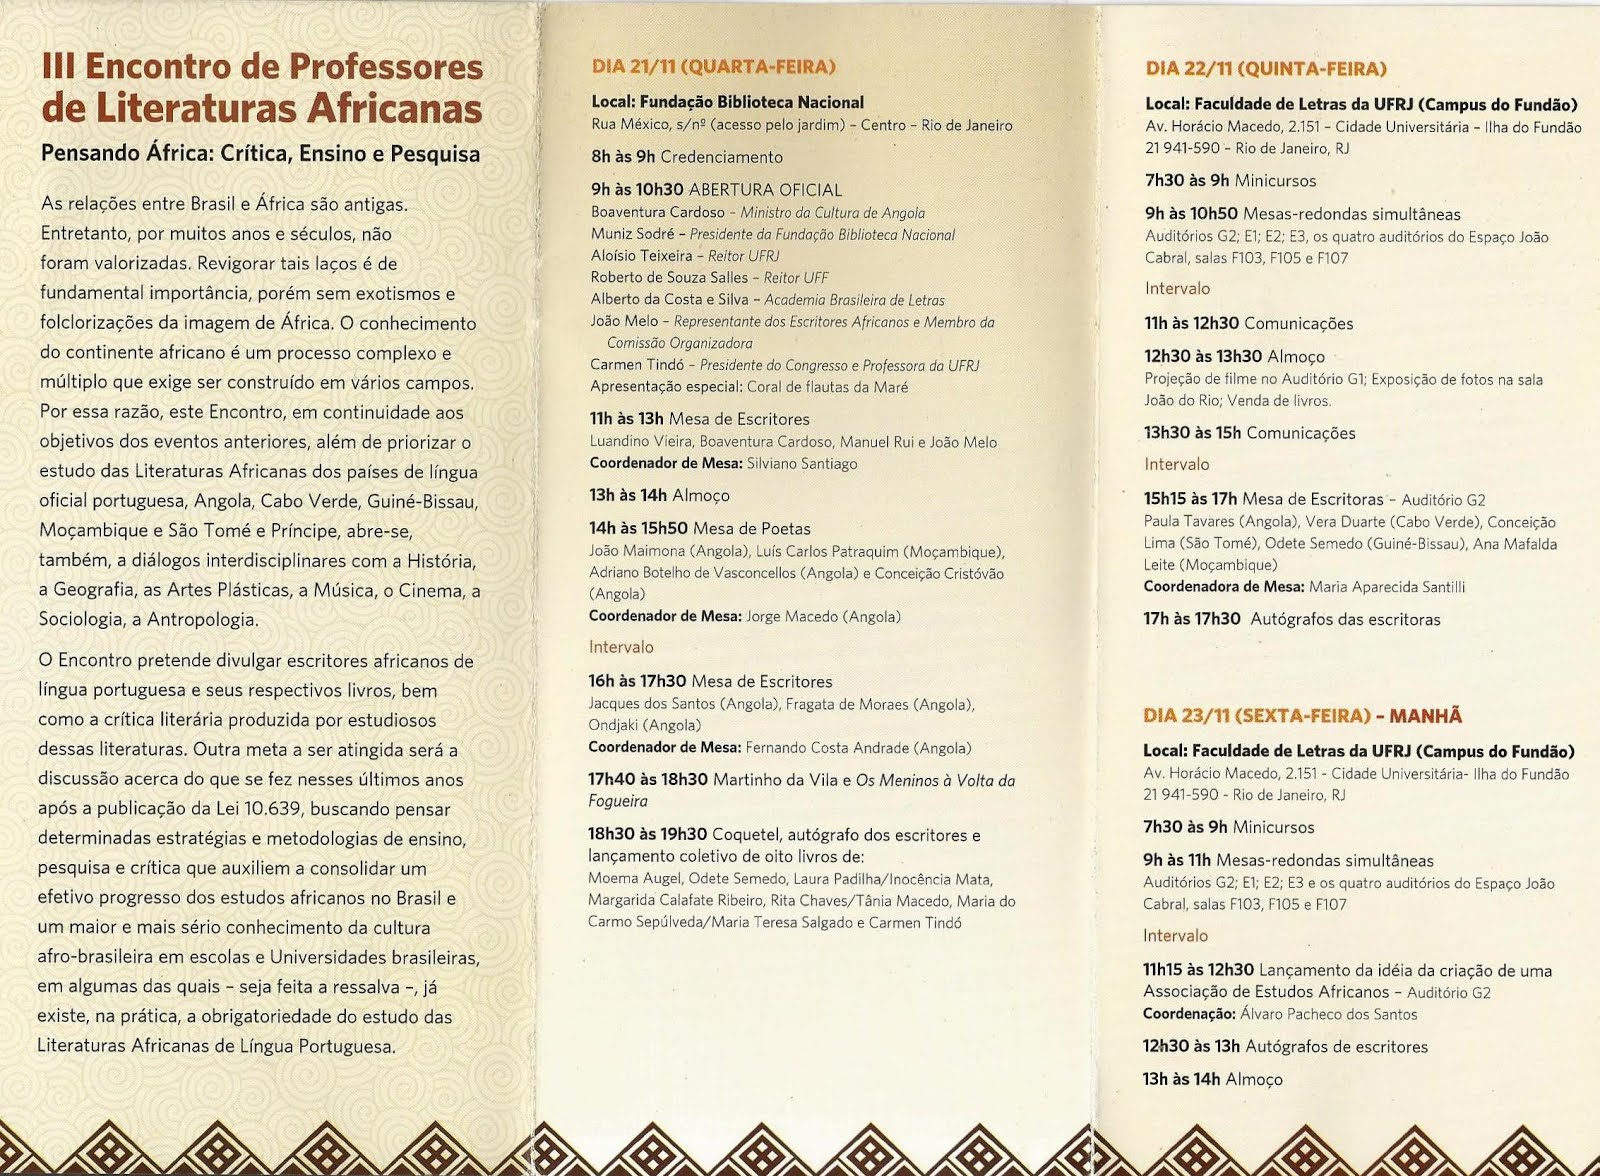 III ENCONTRO DE PROFESSORES DE LITERATURAS AFICANAS